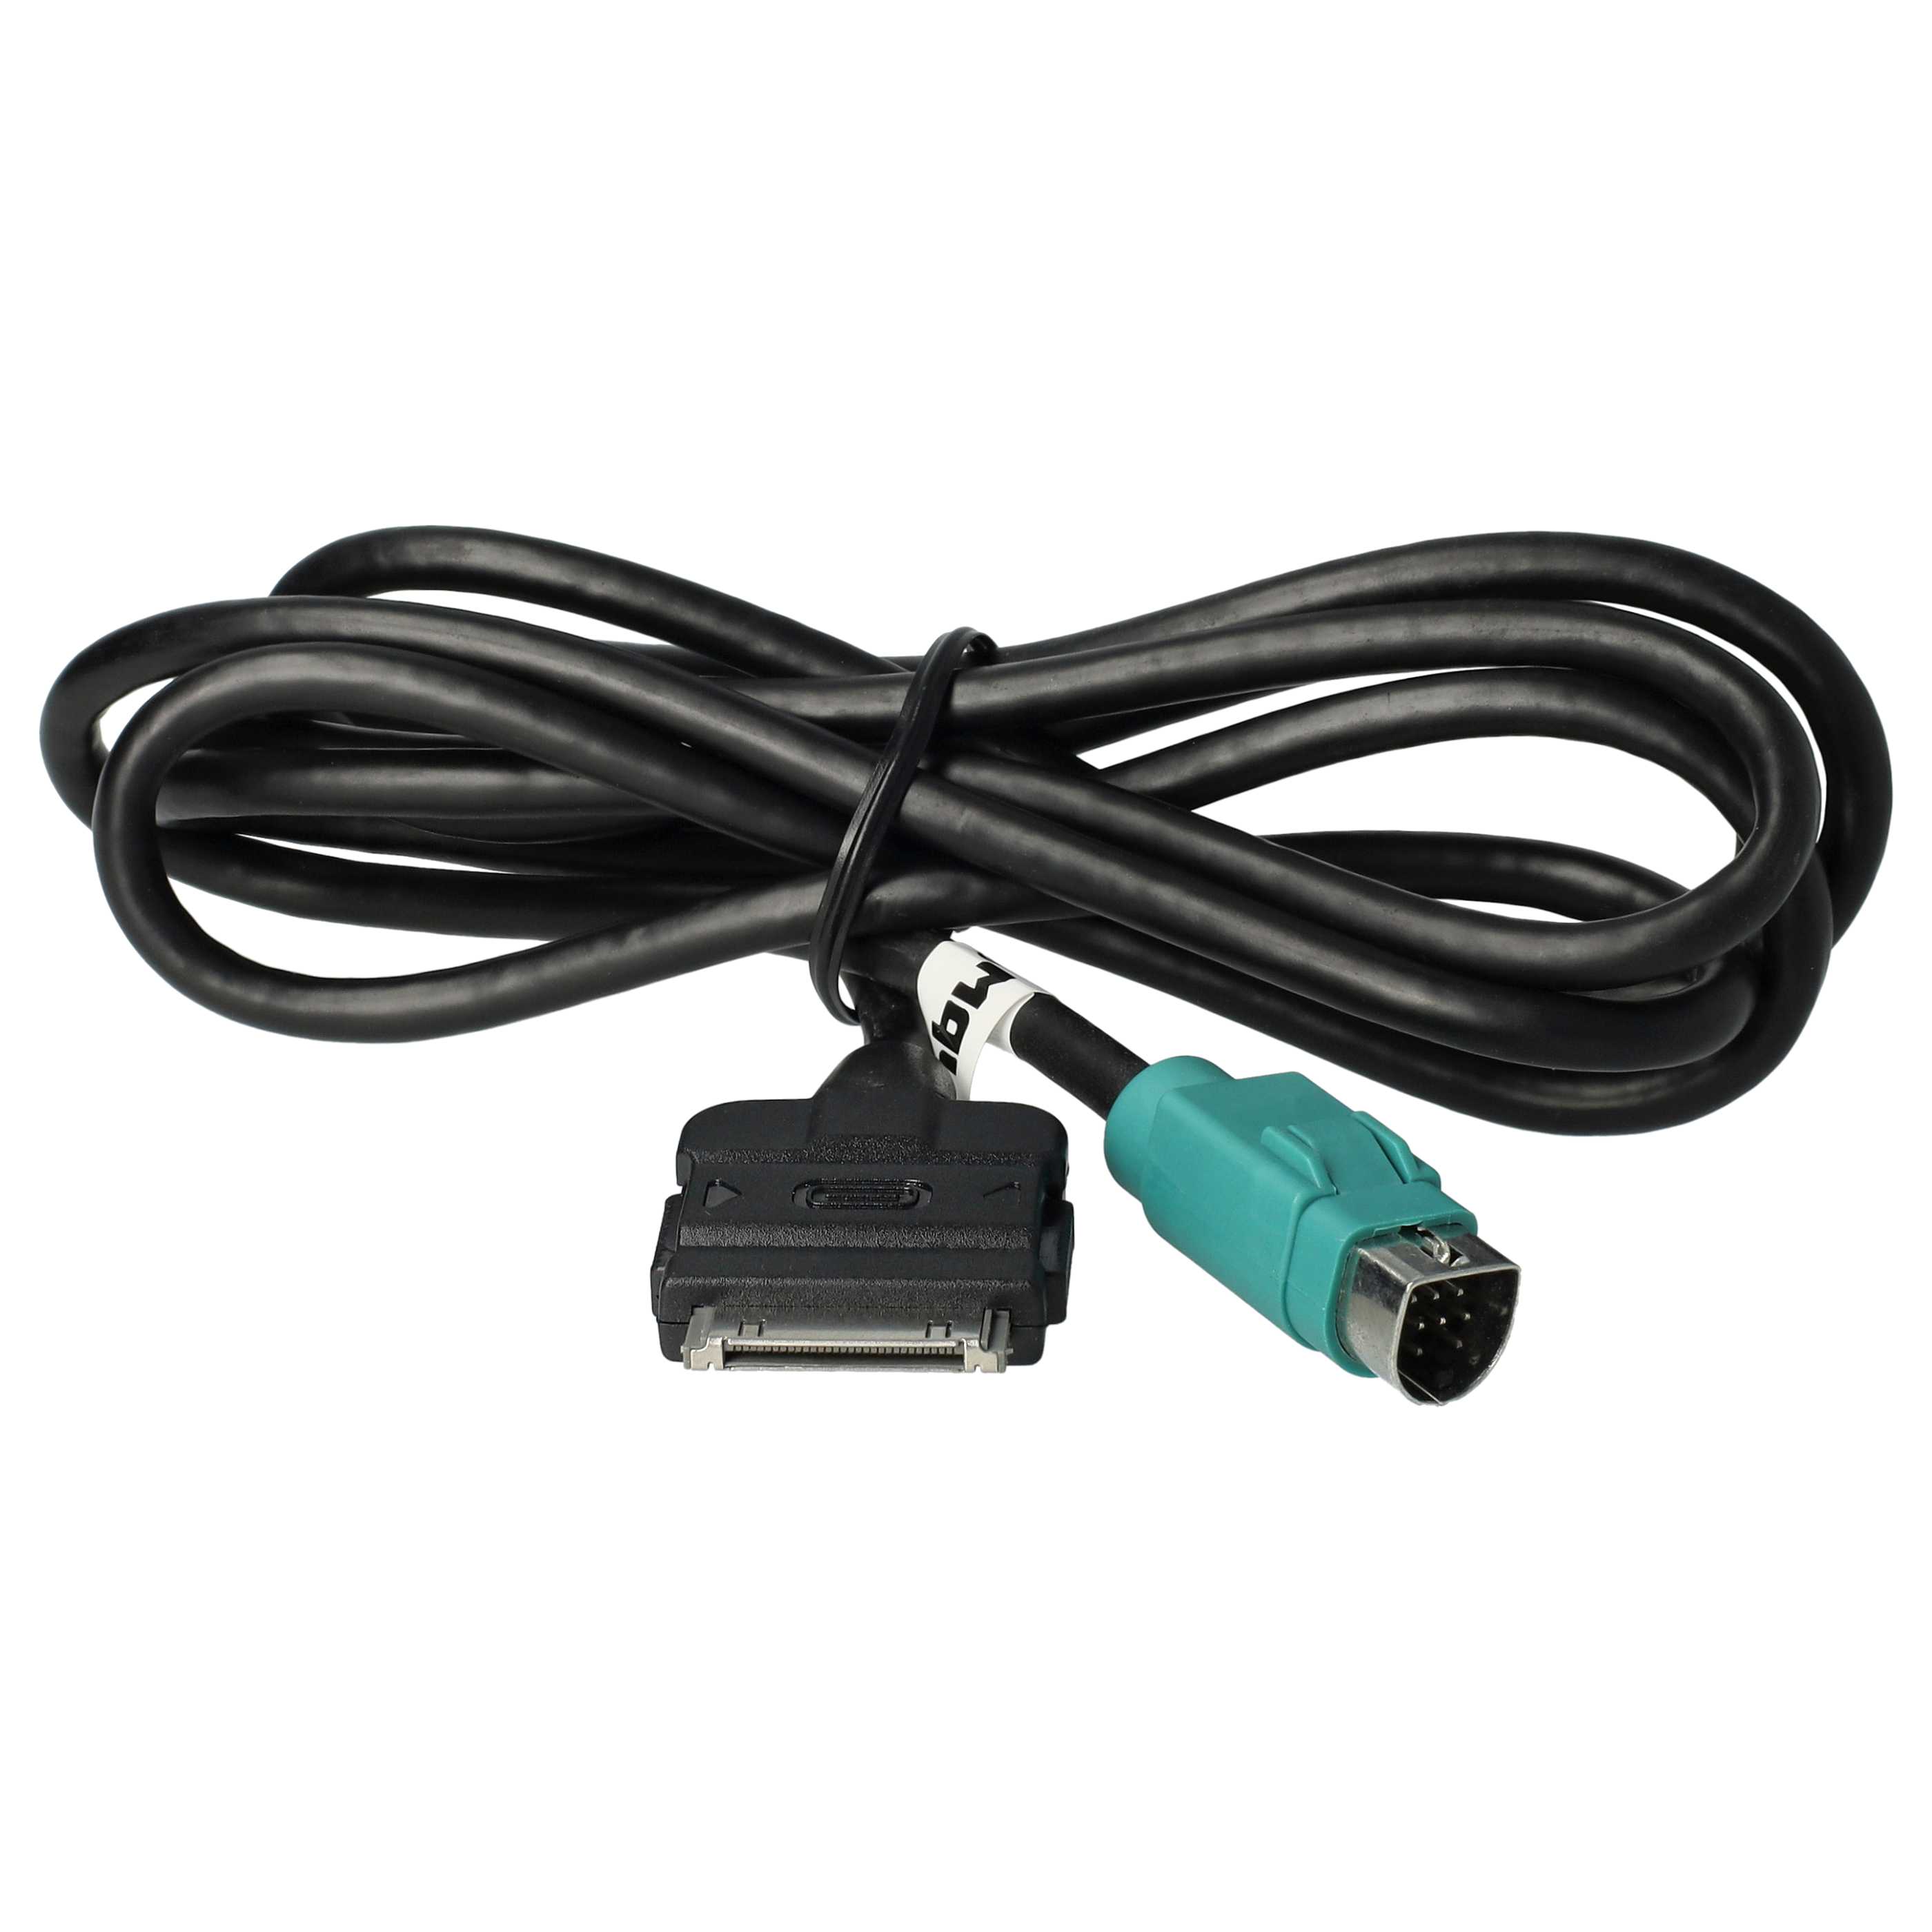 Kabel audio do samochodu Alpine zamiennik Alpine KCE-422i- 100 cm